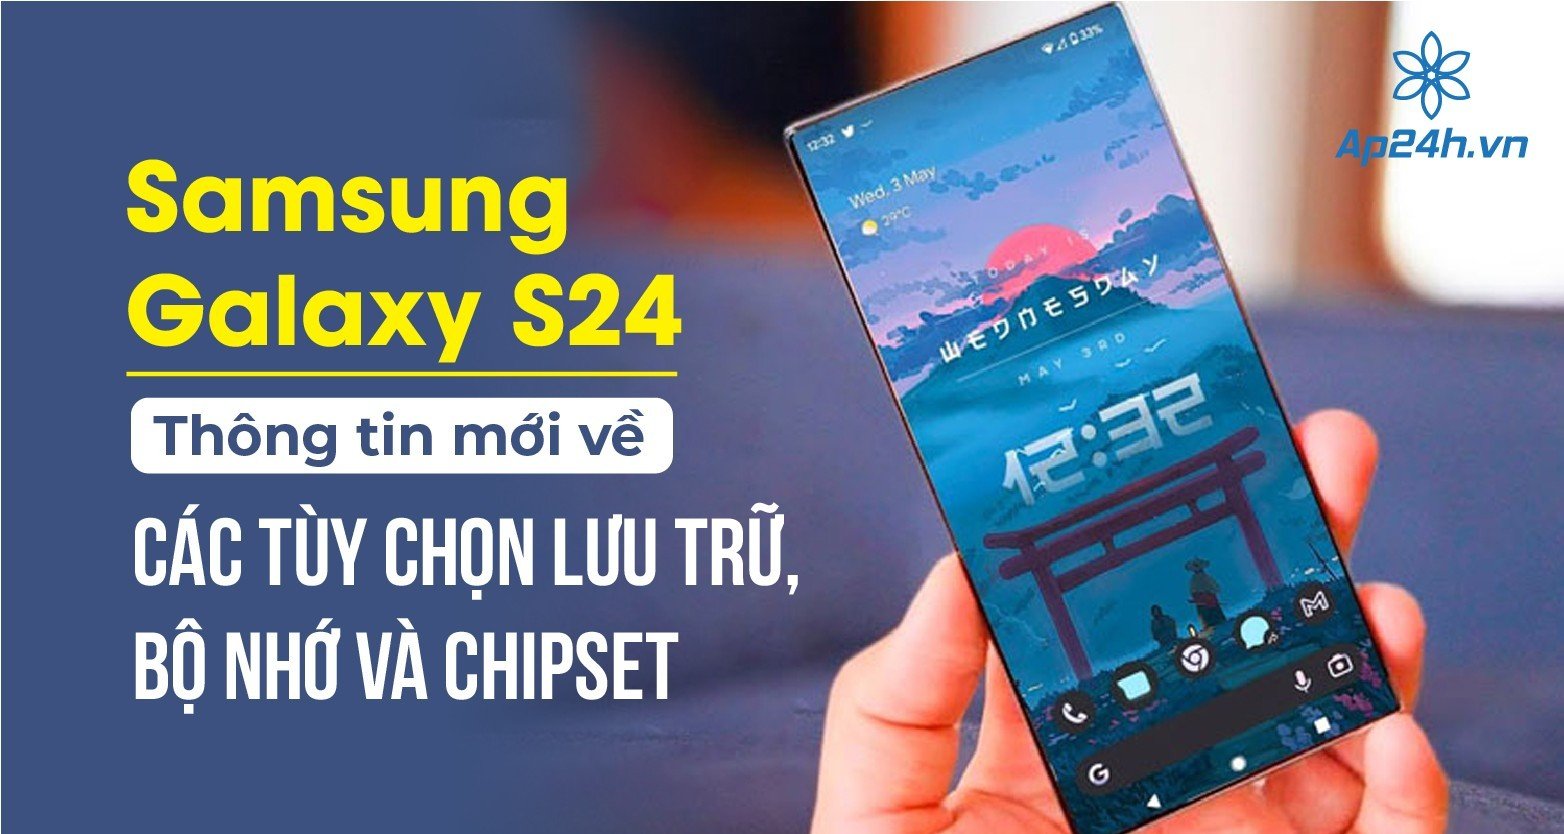  Samsung Galaxy S24: Thông tin mới về các tùy chọn lưu trữ, bộ nhớ và chipset